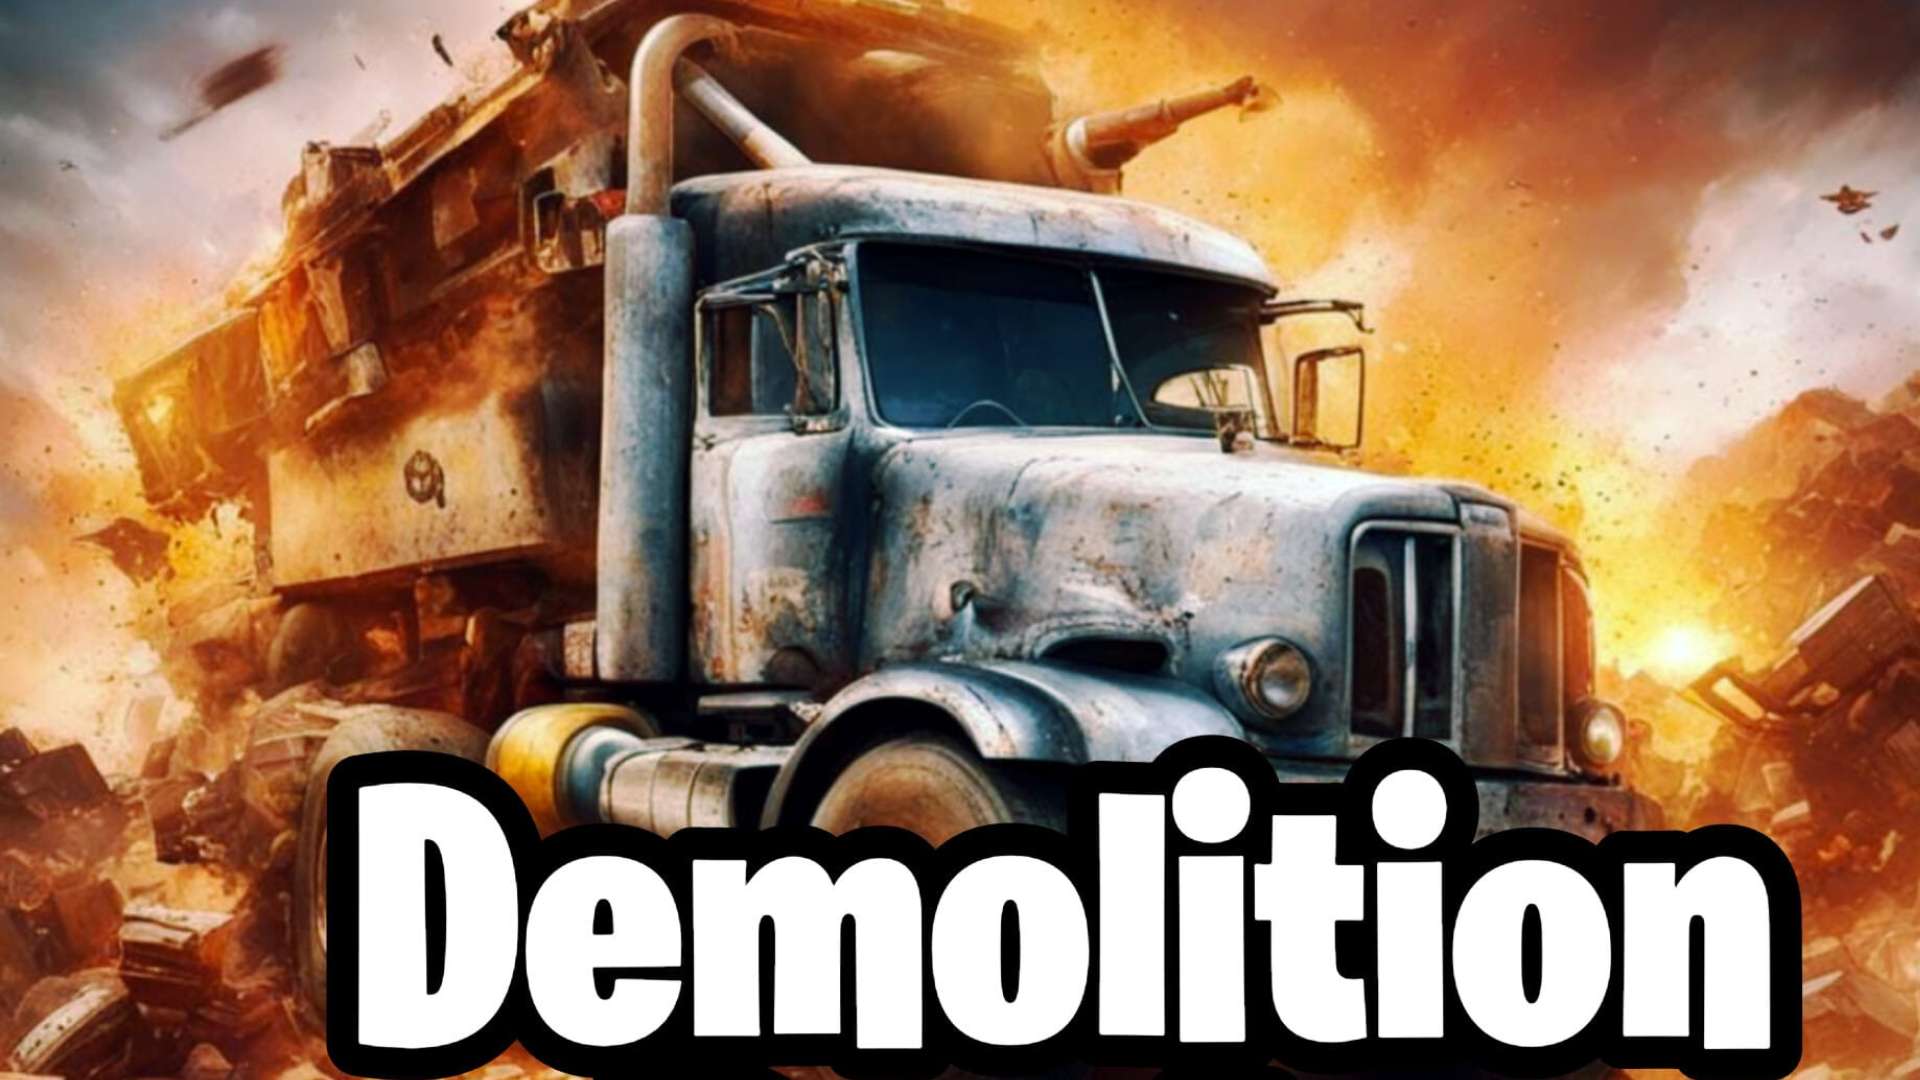 ¤ Demolition Derby ¤